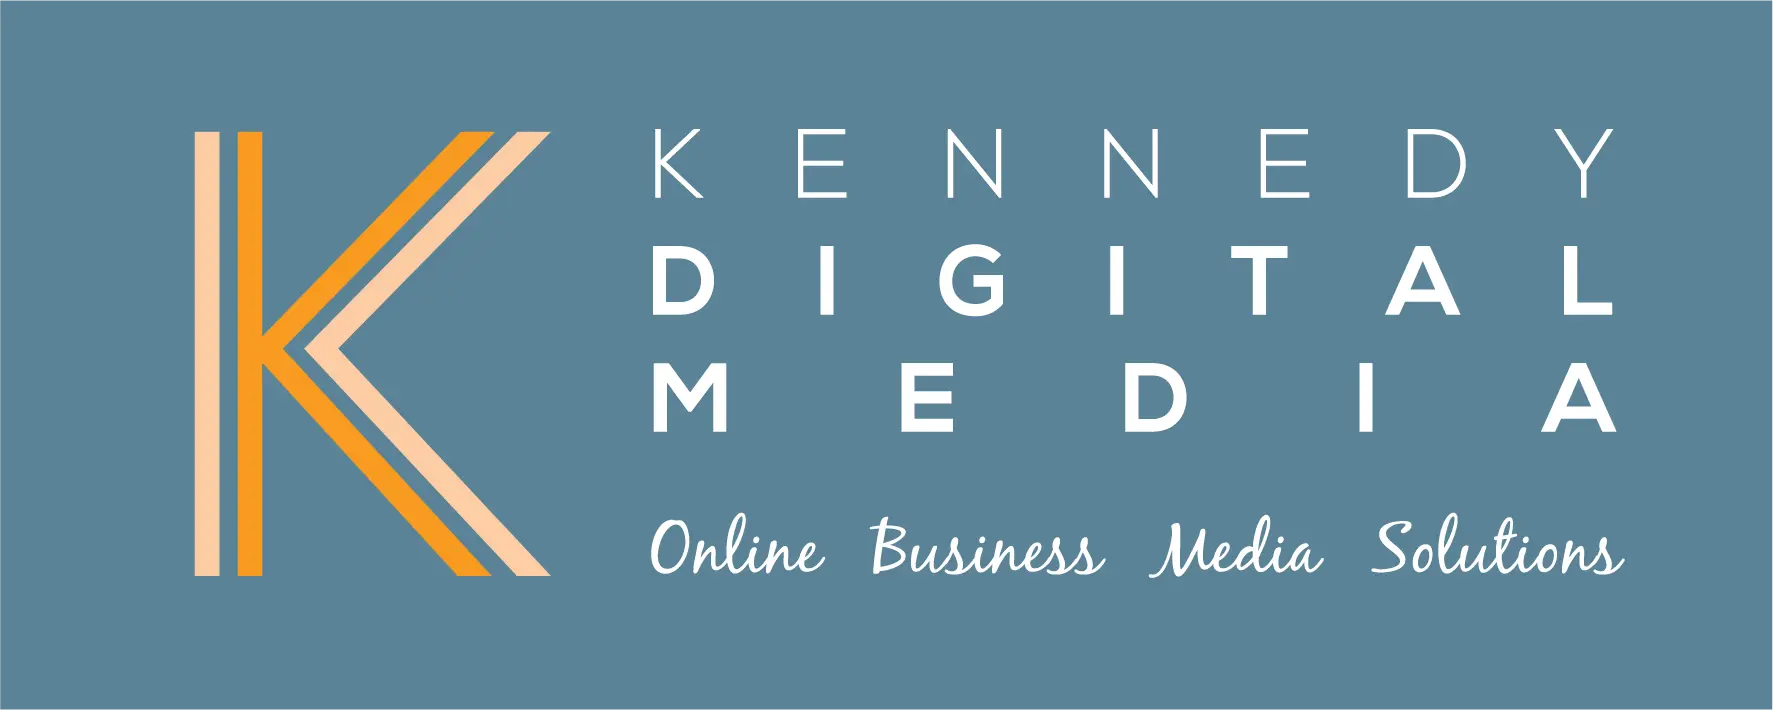 Kennedy Digital Media